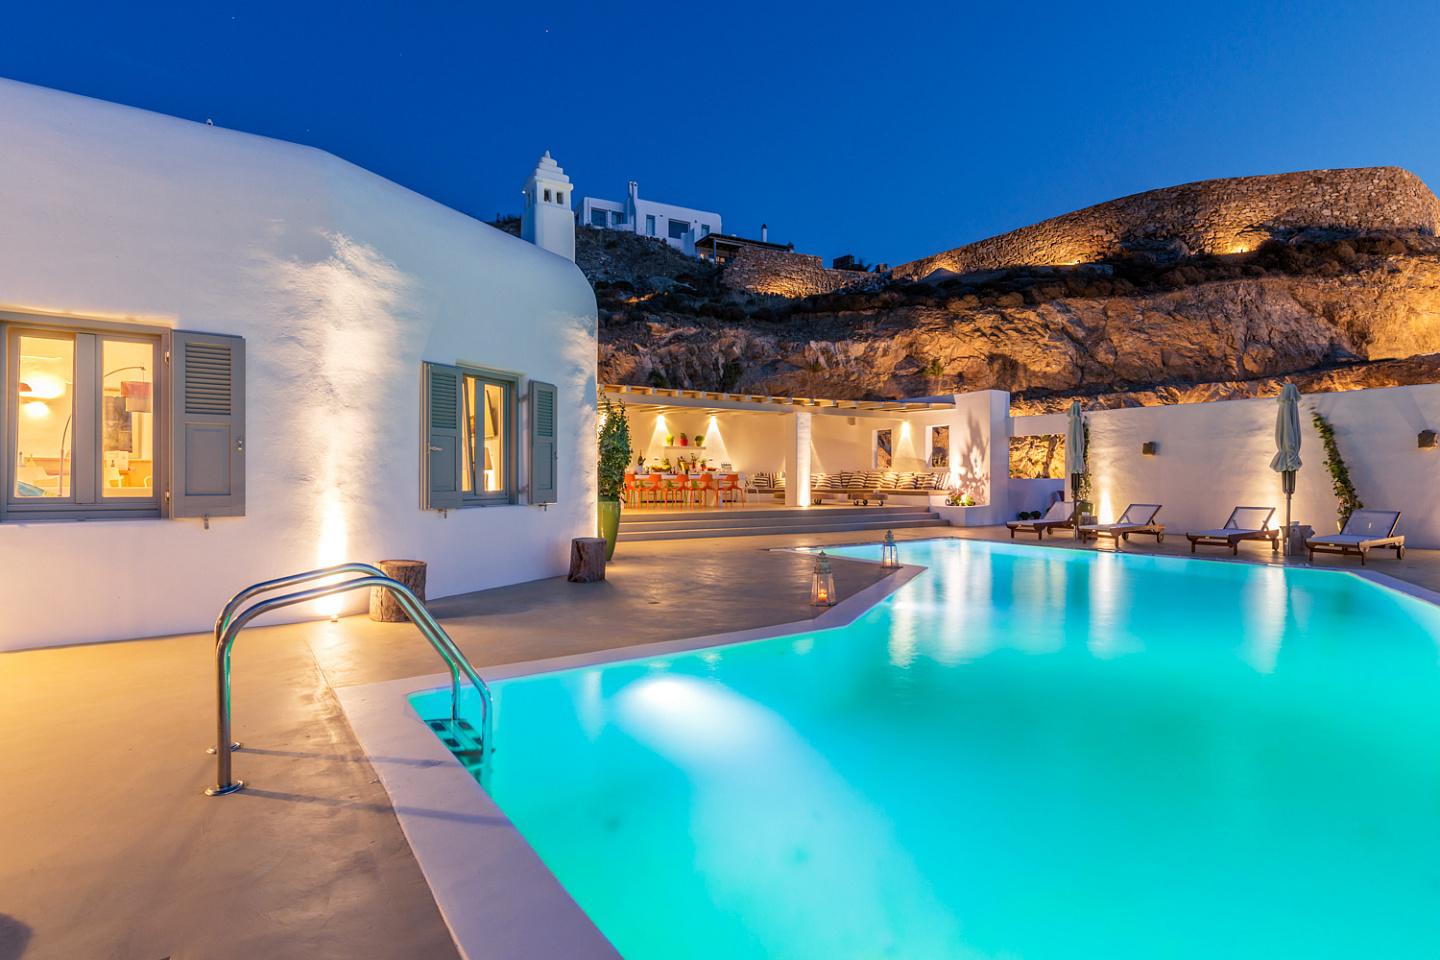 Villa for sale in Mykonos, Greece.